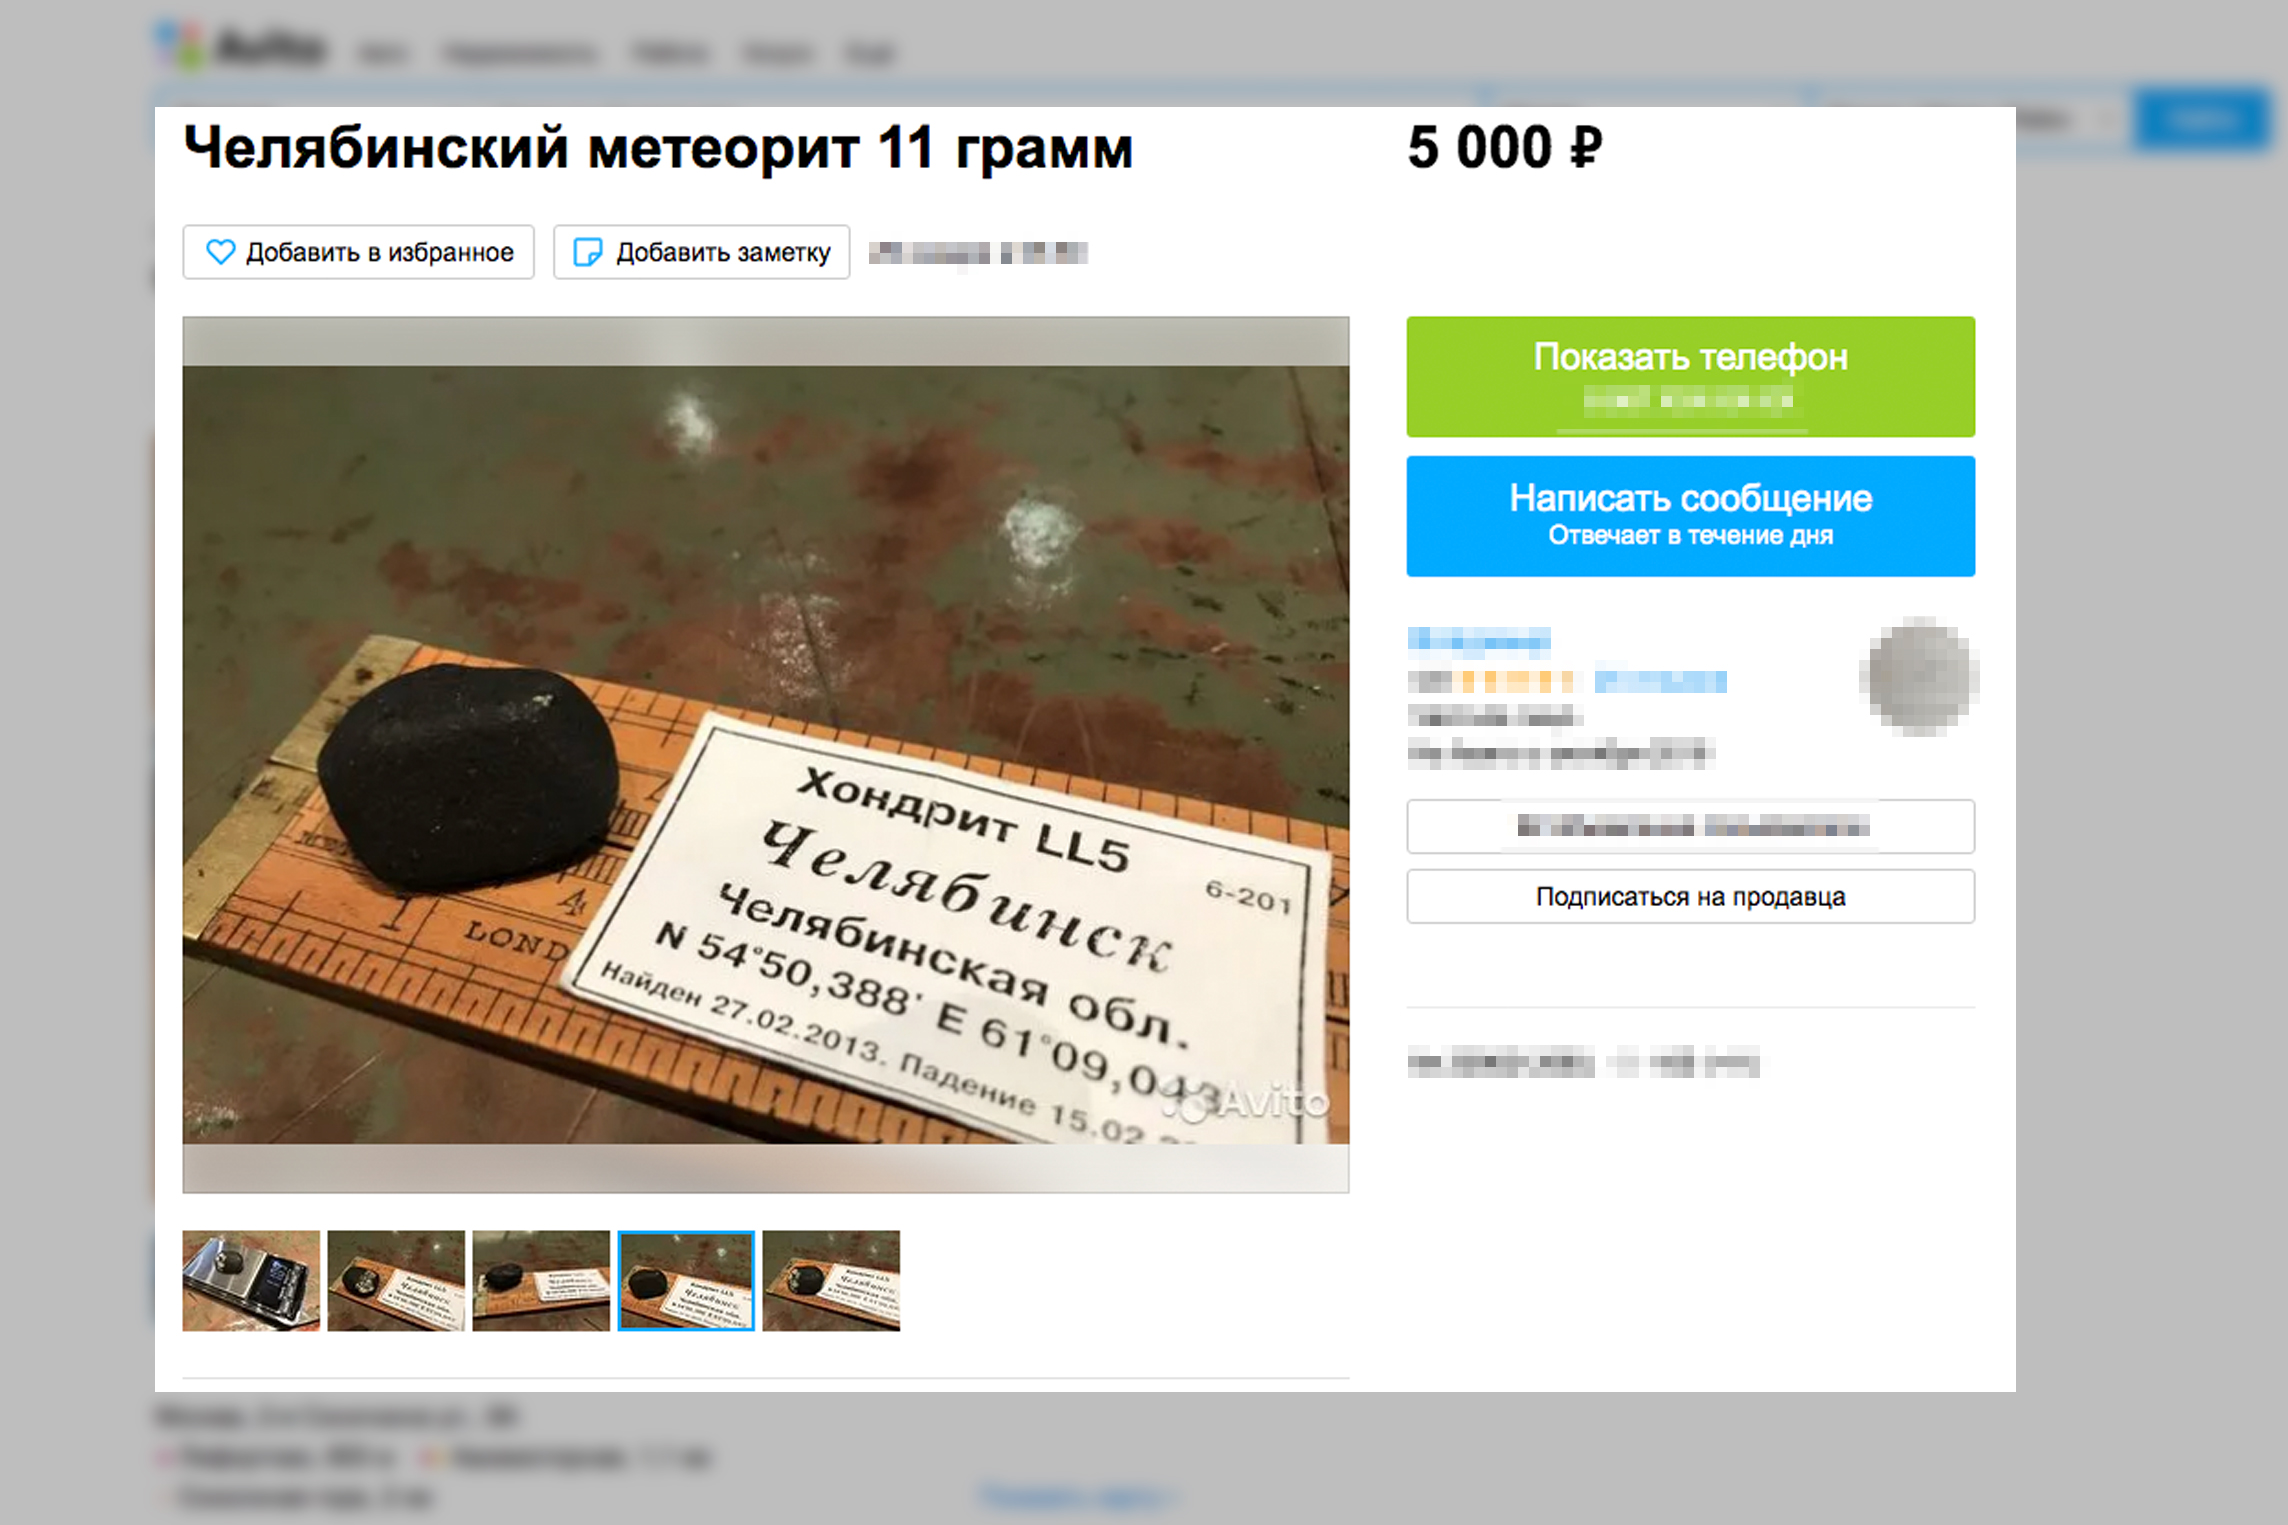 Объявление о продаже фрагмента Челябинского метеорита. Скриншот © Avito